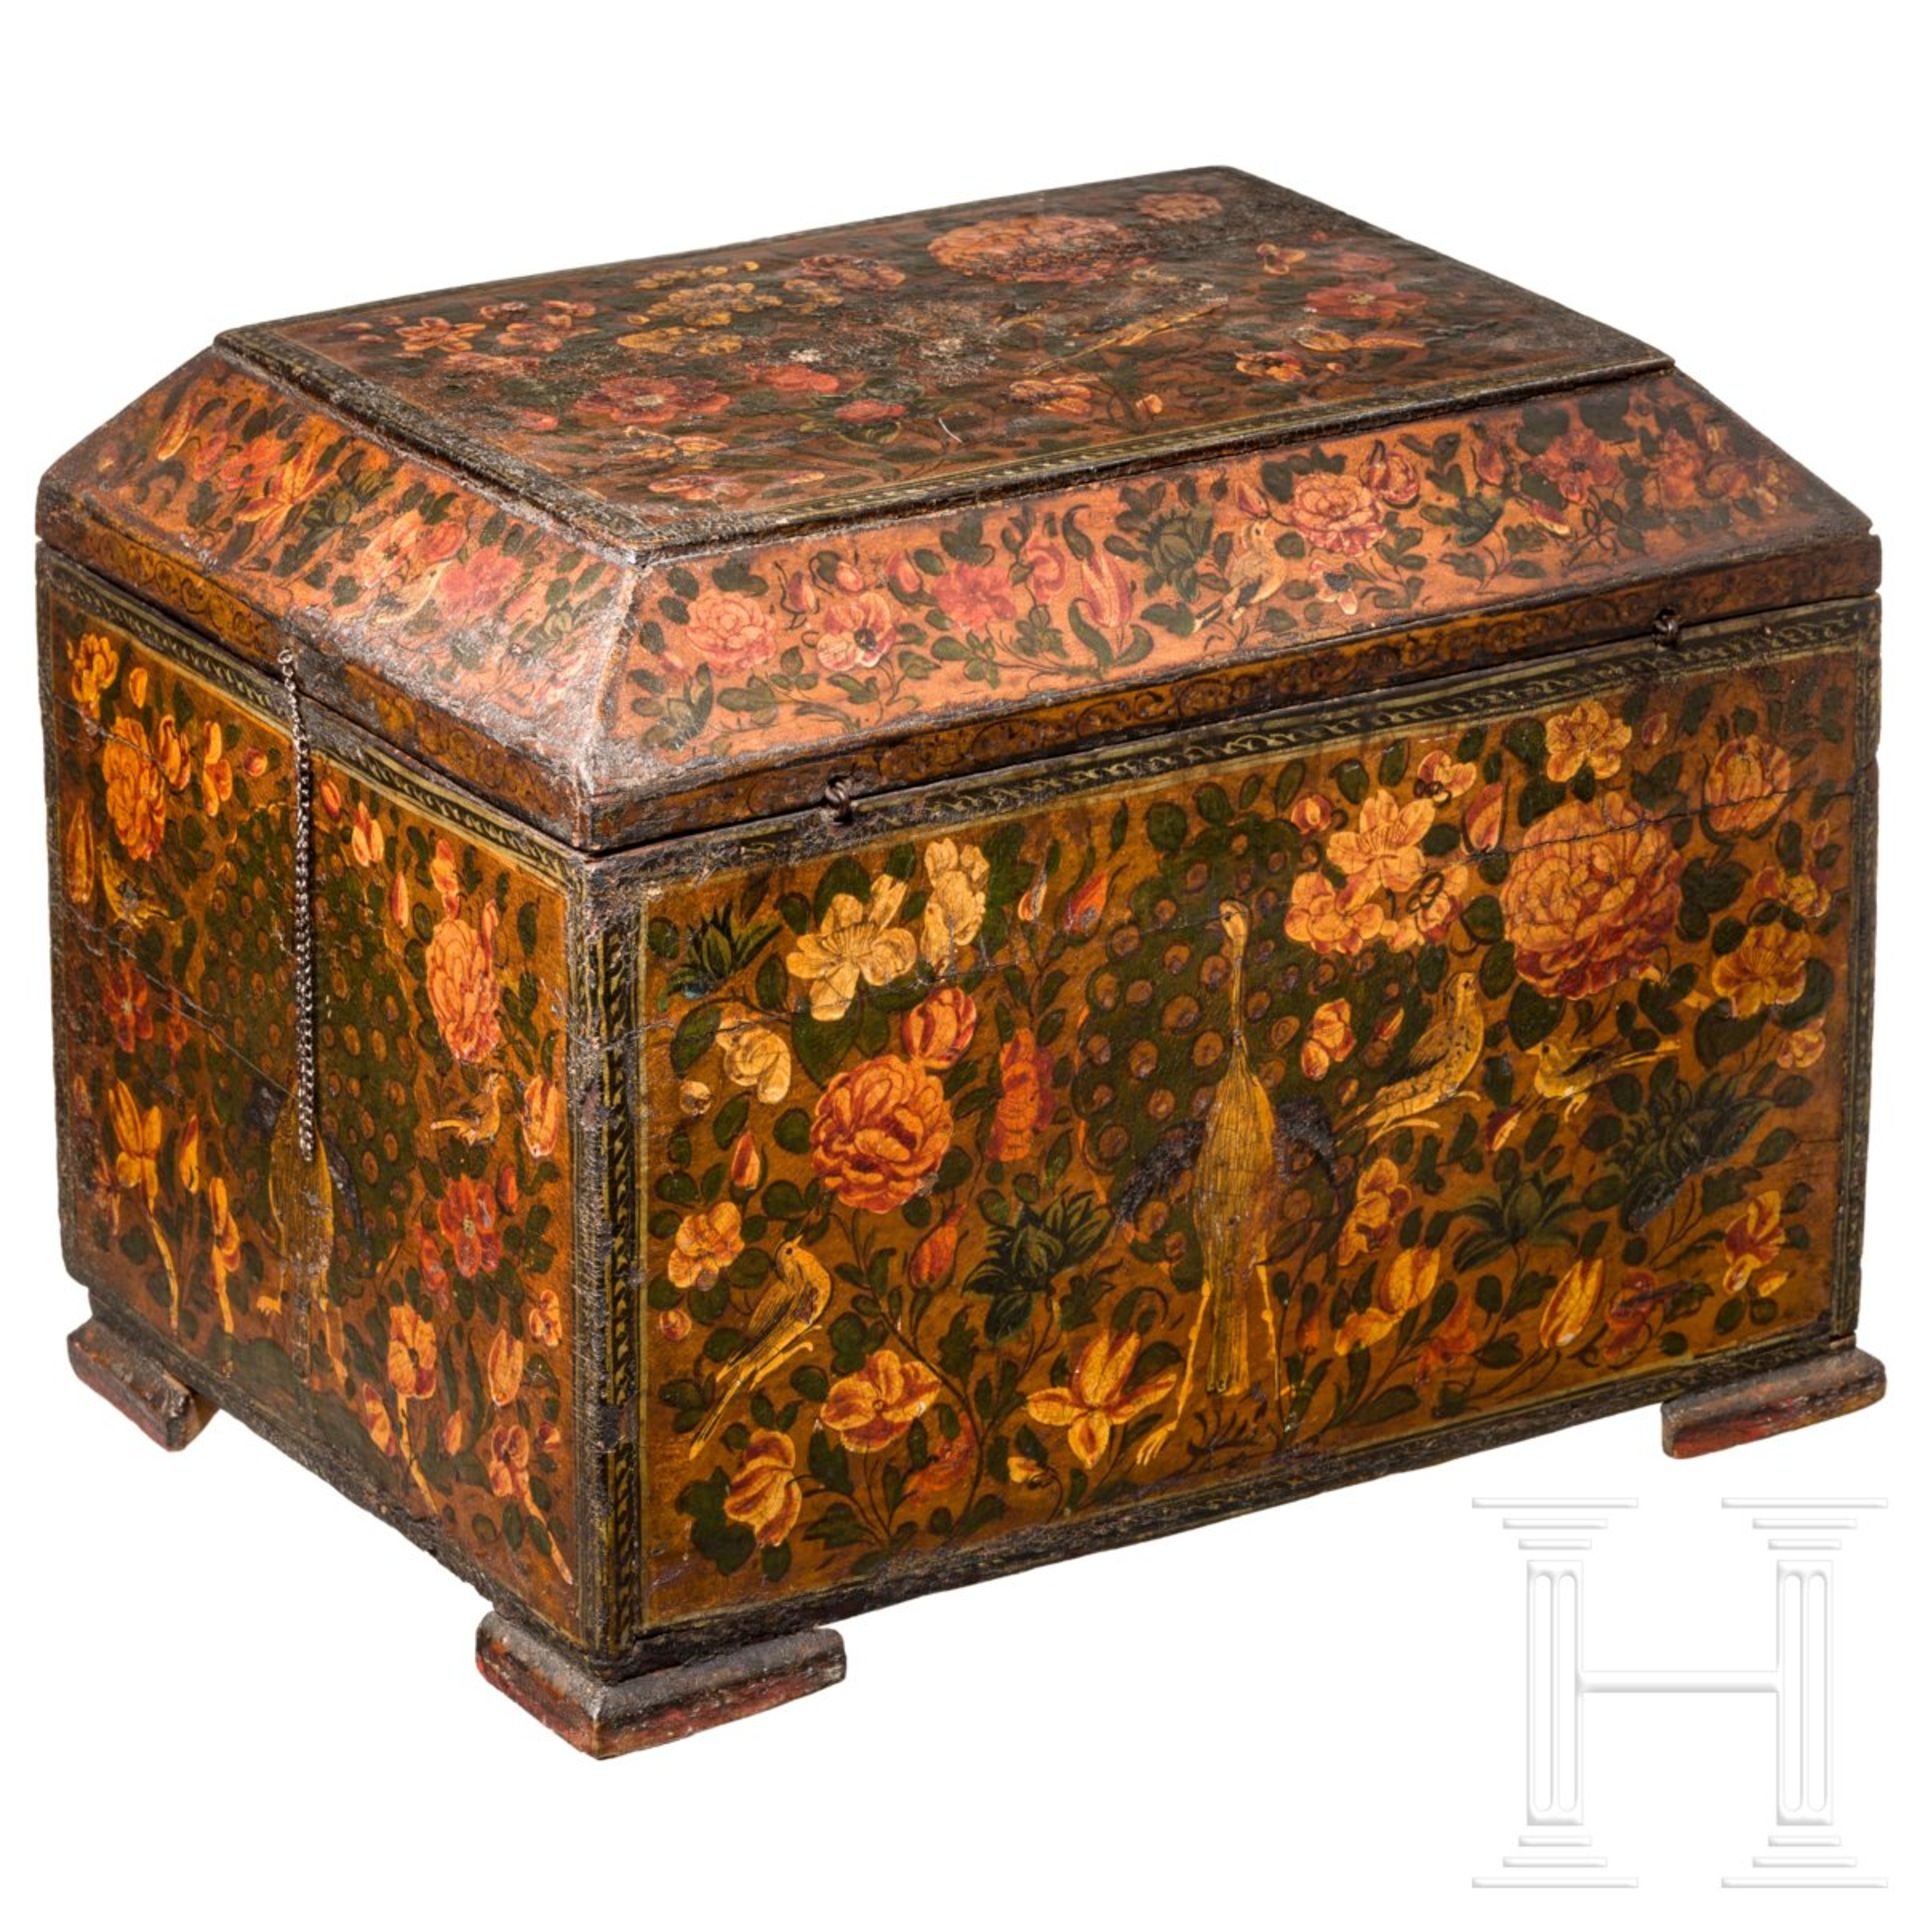 Kabinettkästchen, indopersisch, 1. Hälfte 19. Jhdt.Polychrom mit reichen floralen Ornamenten - Bild 5 aus 7